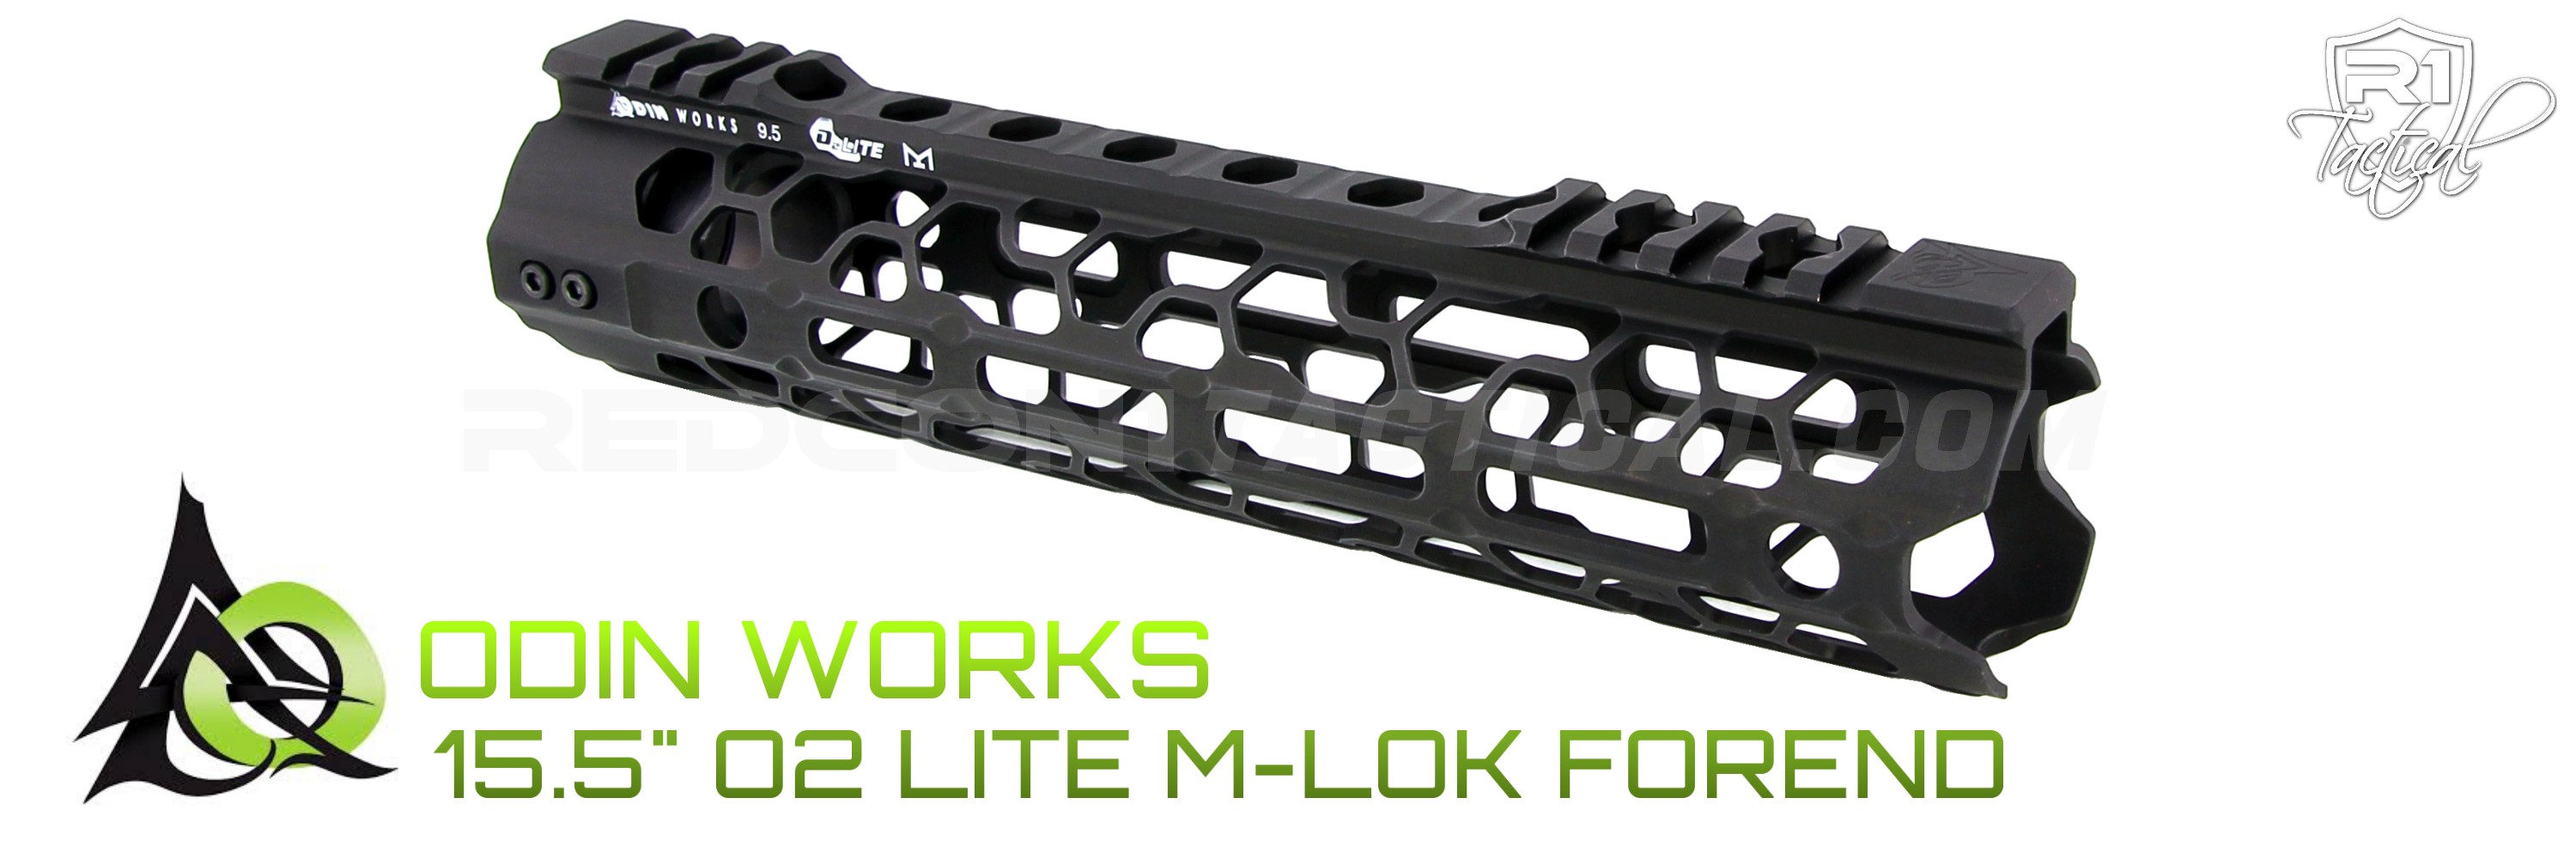 ODIN Works 9.5 O2 Lite M-LOK Forend - Black | R1 Tactical